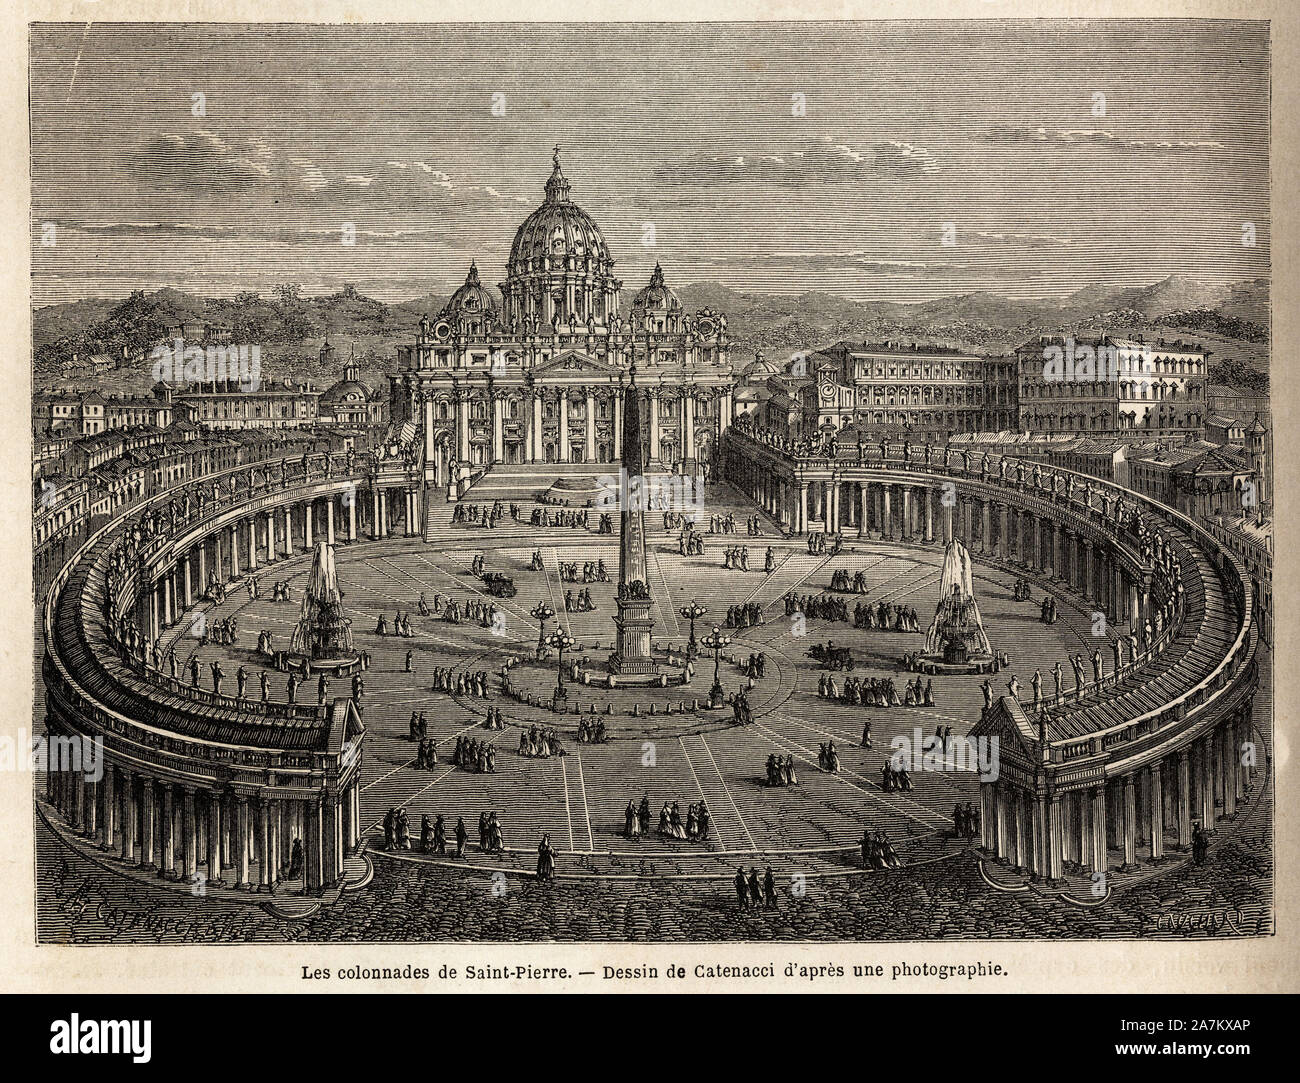 Les colonnades de saint Pierre au Vatican, amenagees par le Bernin (1598-1680) des 1655, sur un plan elliptique, qui se generalisera pour devenir un l Stock Photo